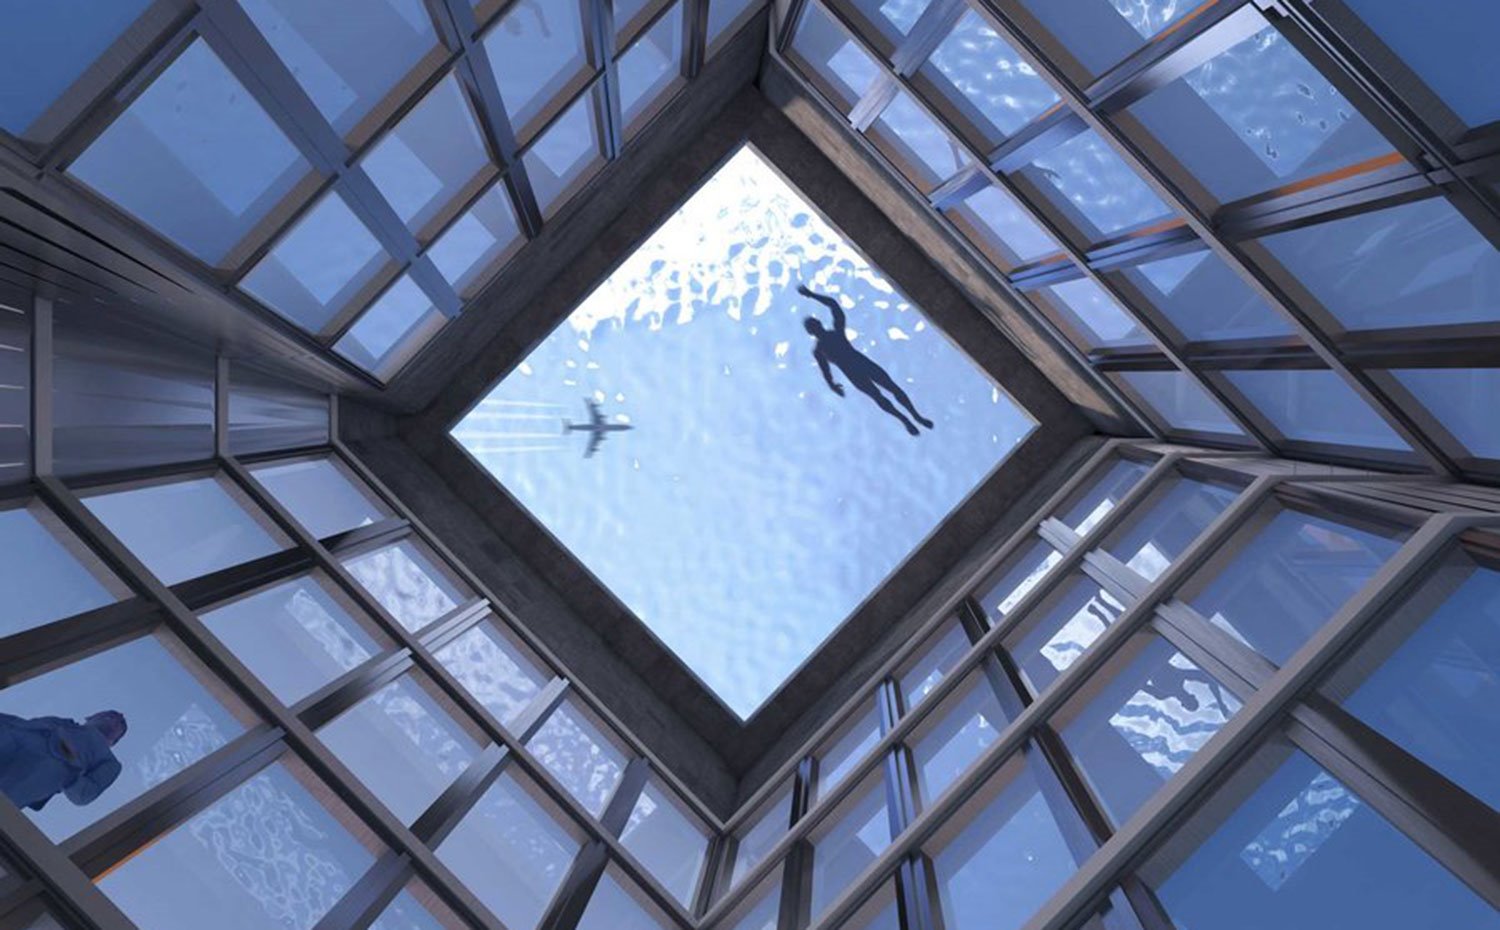 Vista desde el interior del edificio de la piscina infinita con la silueta de un nadador y un avión sobrevolando el cielo